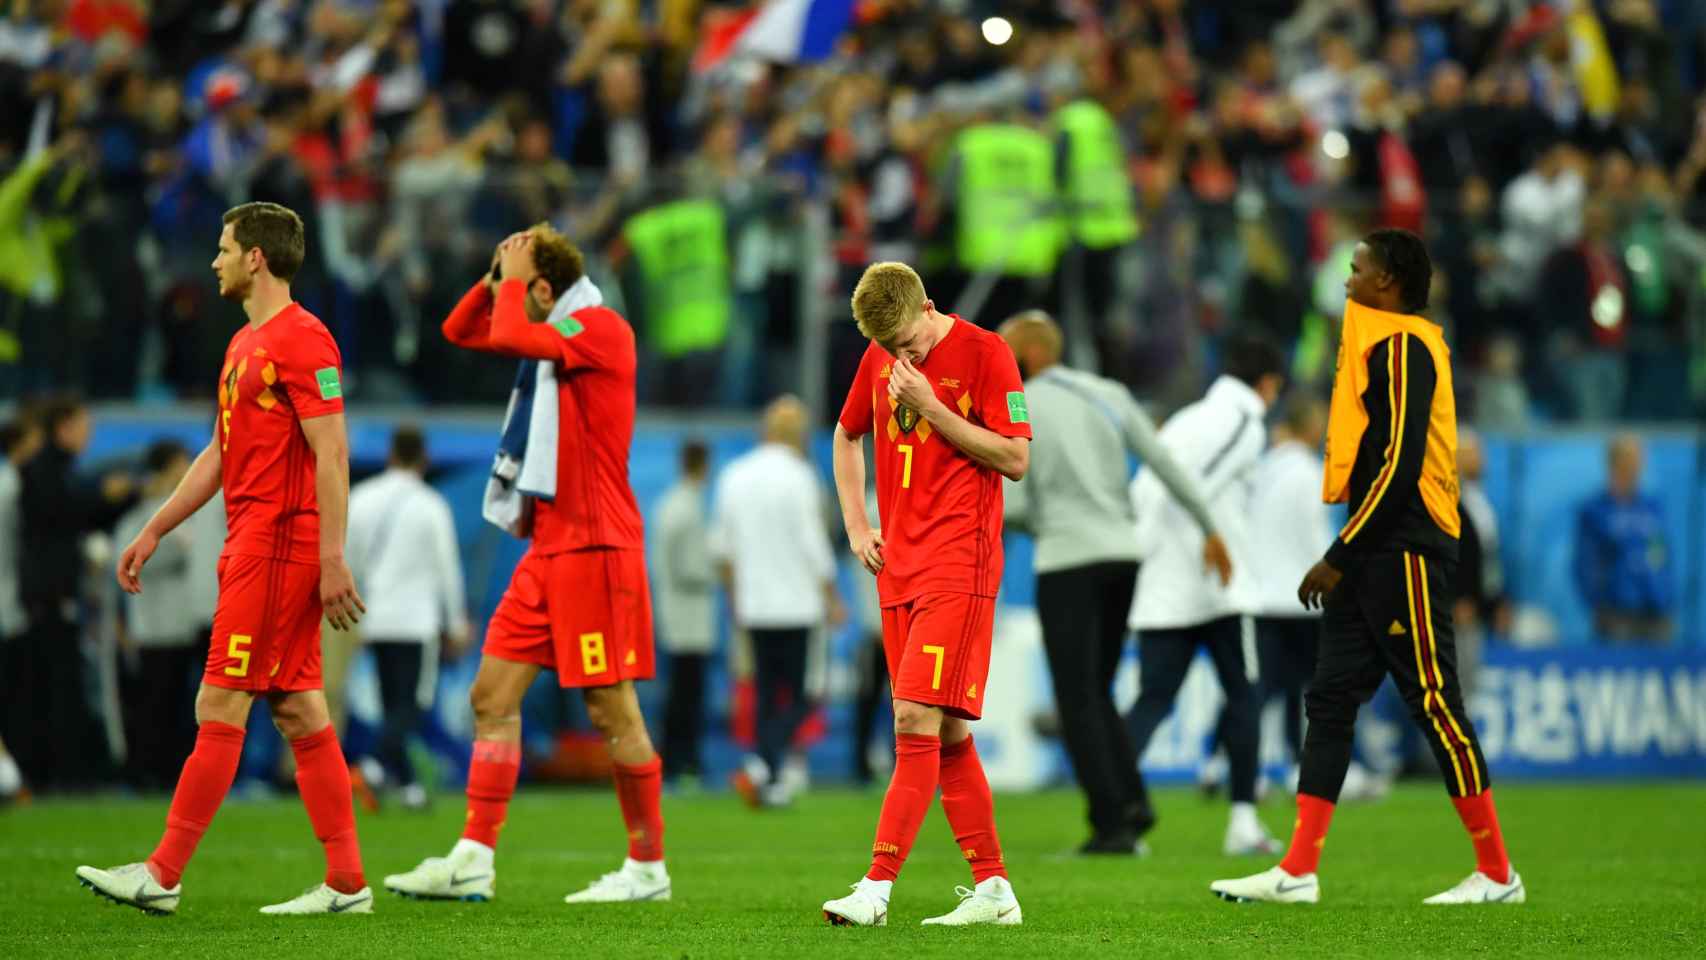 Los jugadores de Bélgica, cabizbajos tras caer en semifinales.